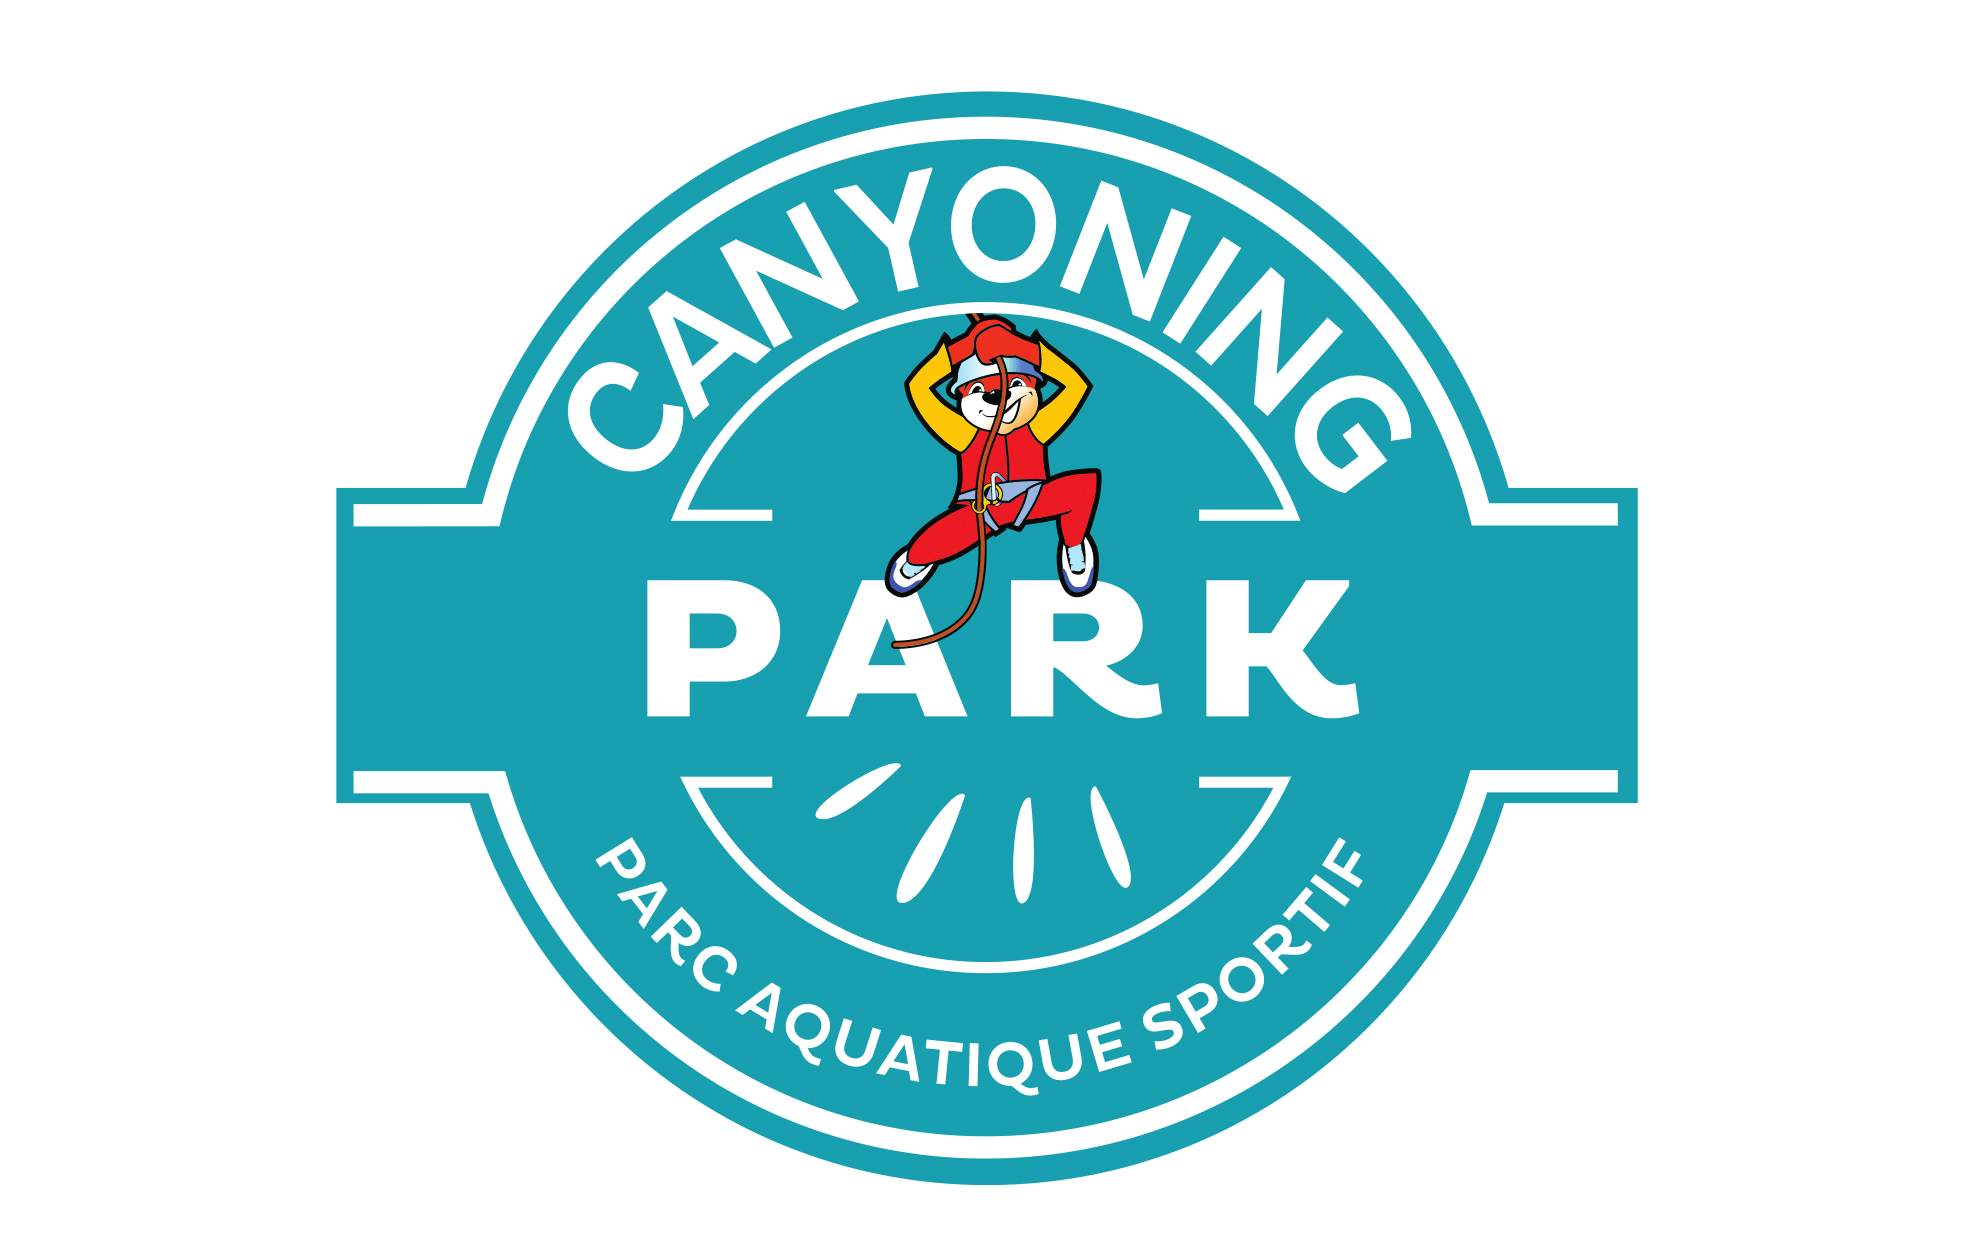 E-billet Canyoning Park (à partir de 10 ans) - Validité : Illimitée